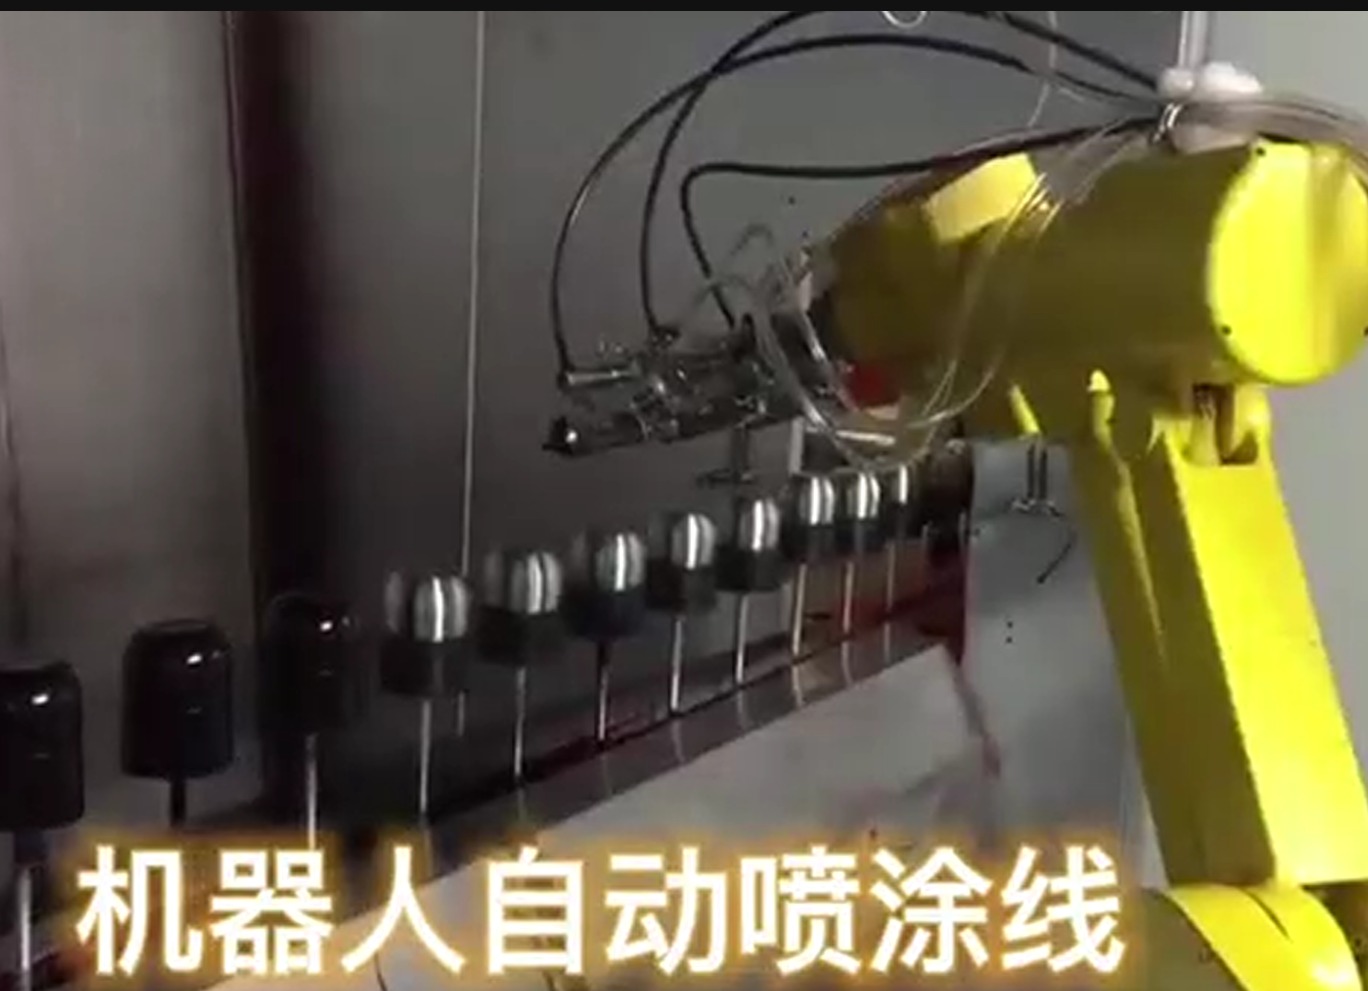 機器人噴涂線案例集，各行個也噴涂機器人生產線。